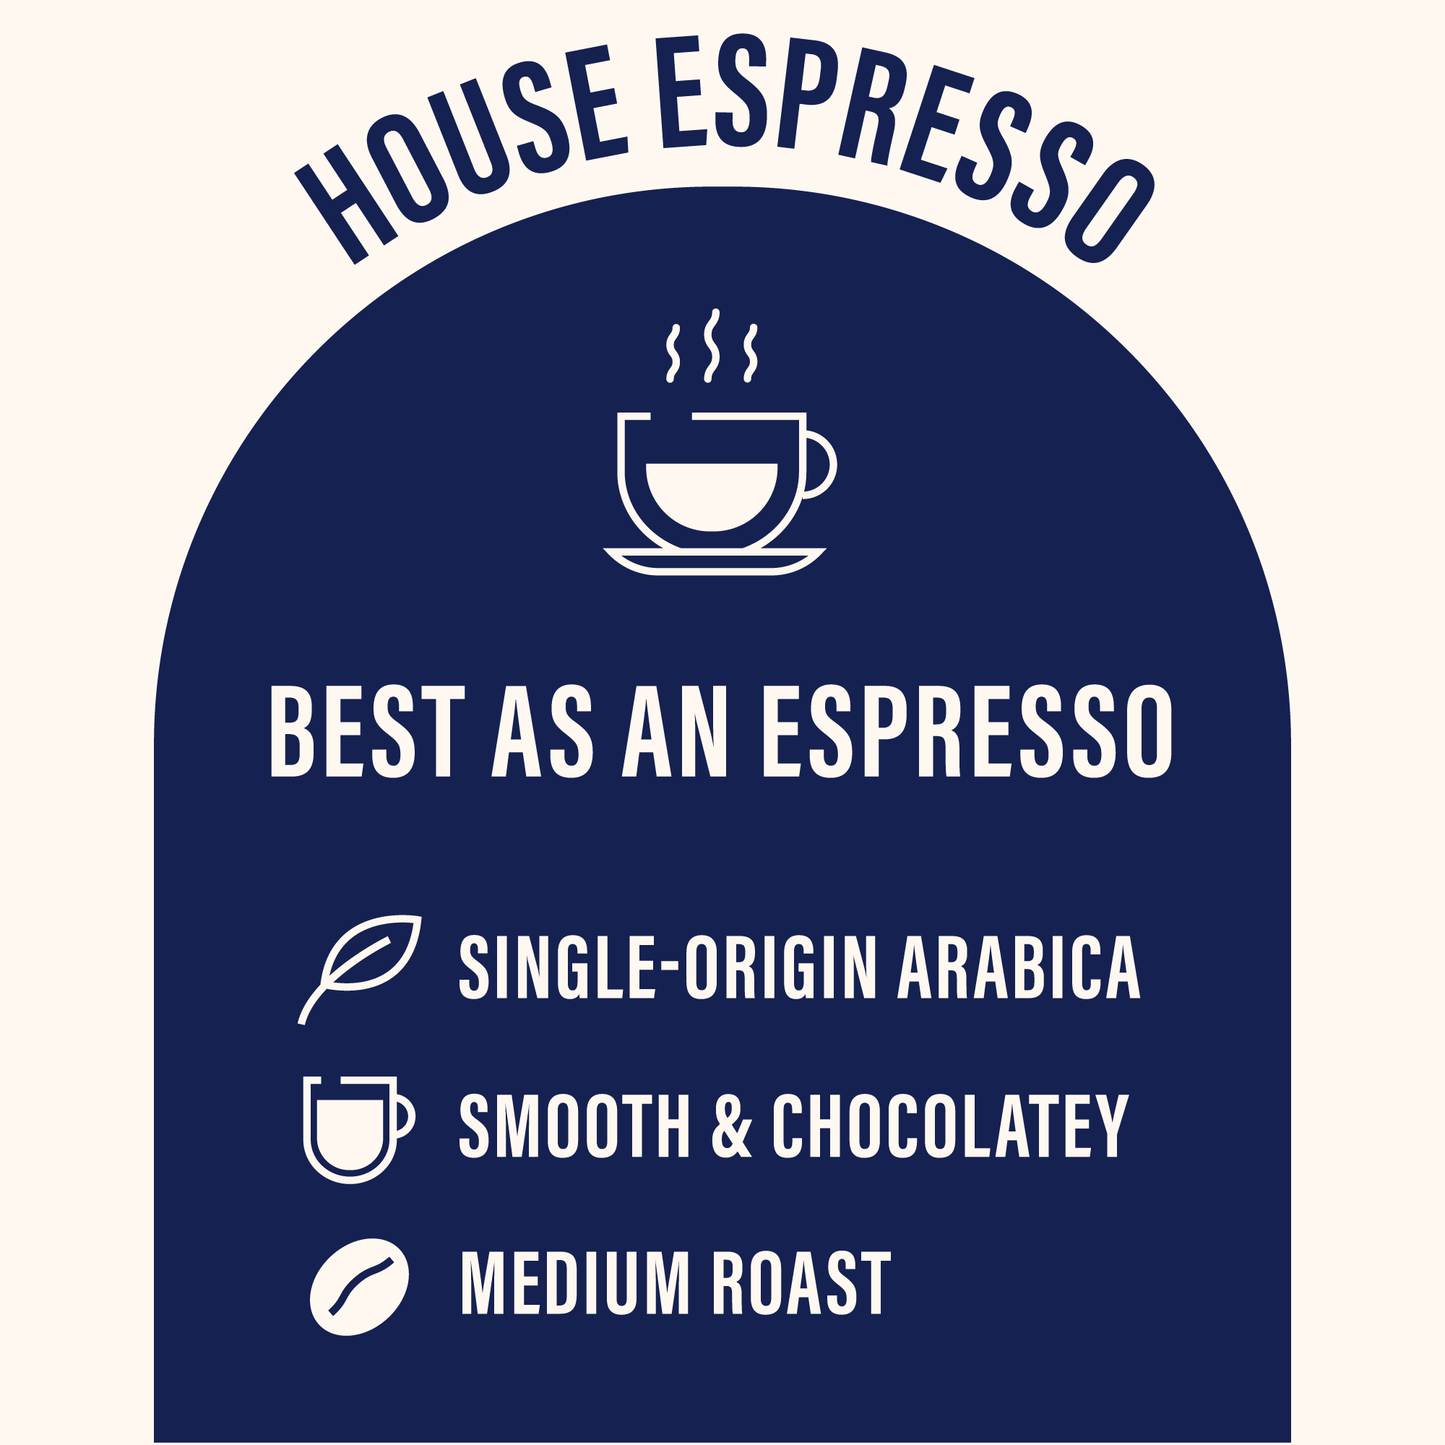 House Espresso